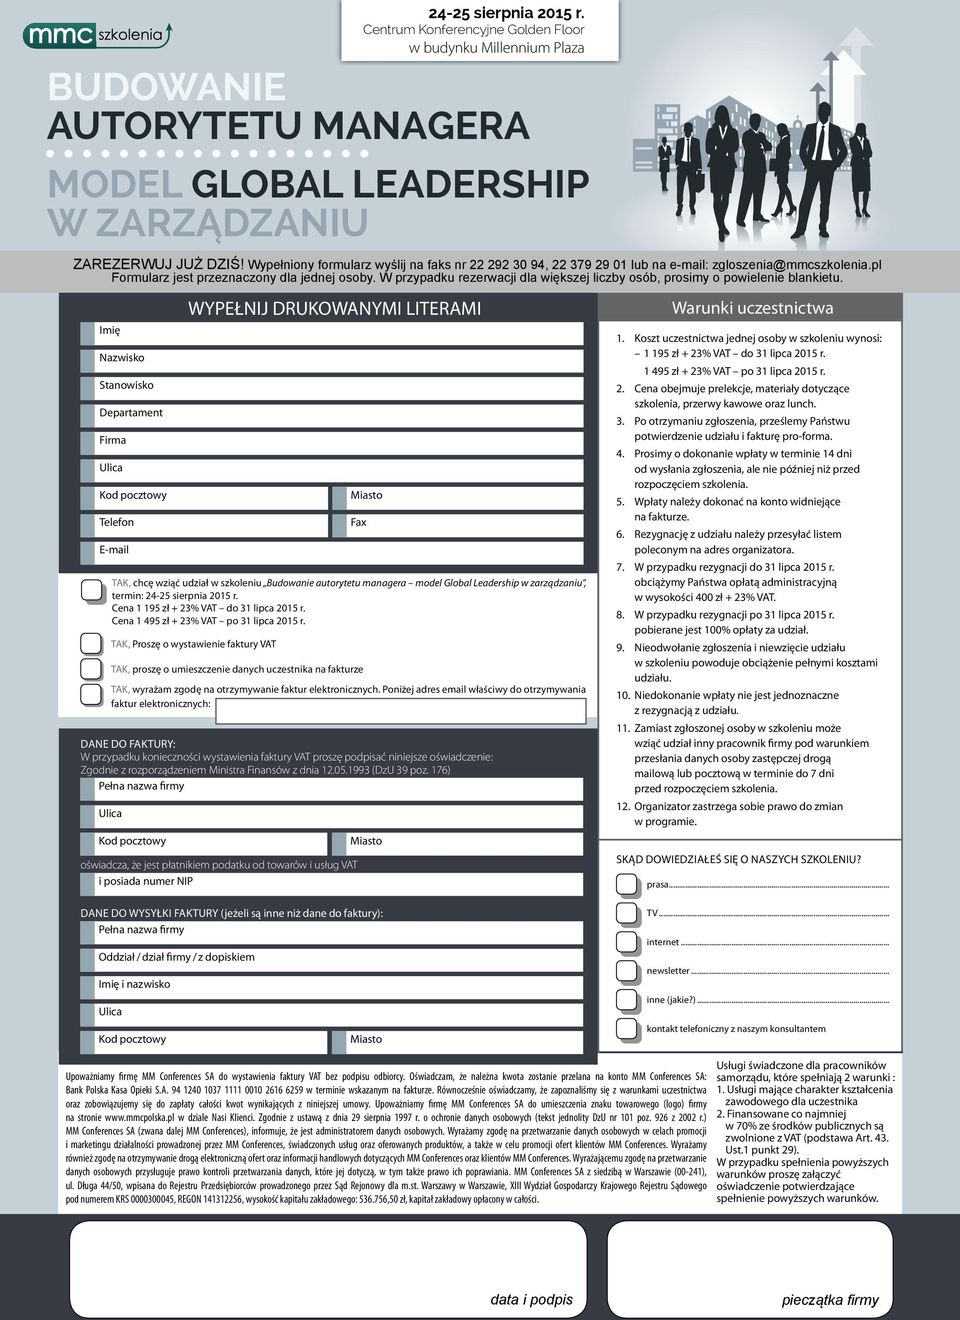 Imię Nazwisko Stanowisko Departament Firma Telefon E-mail WYPEŁNIJ DRUKOWANYMI LITERAMI TAK, chcę wziąć udział w szkoleniu Budowanie autorytetu managera model Global Leadership w zarządzaniu, termin: